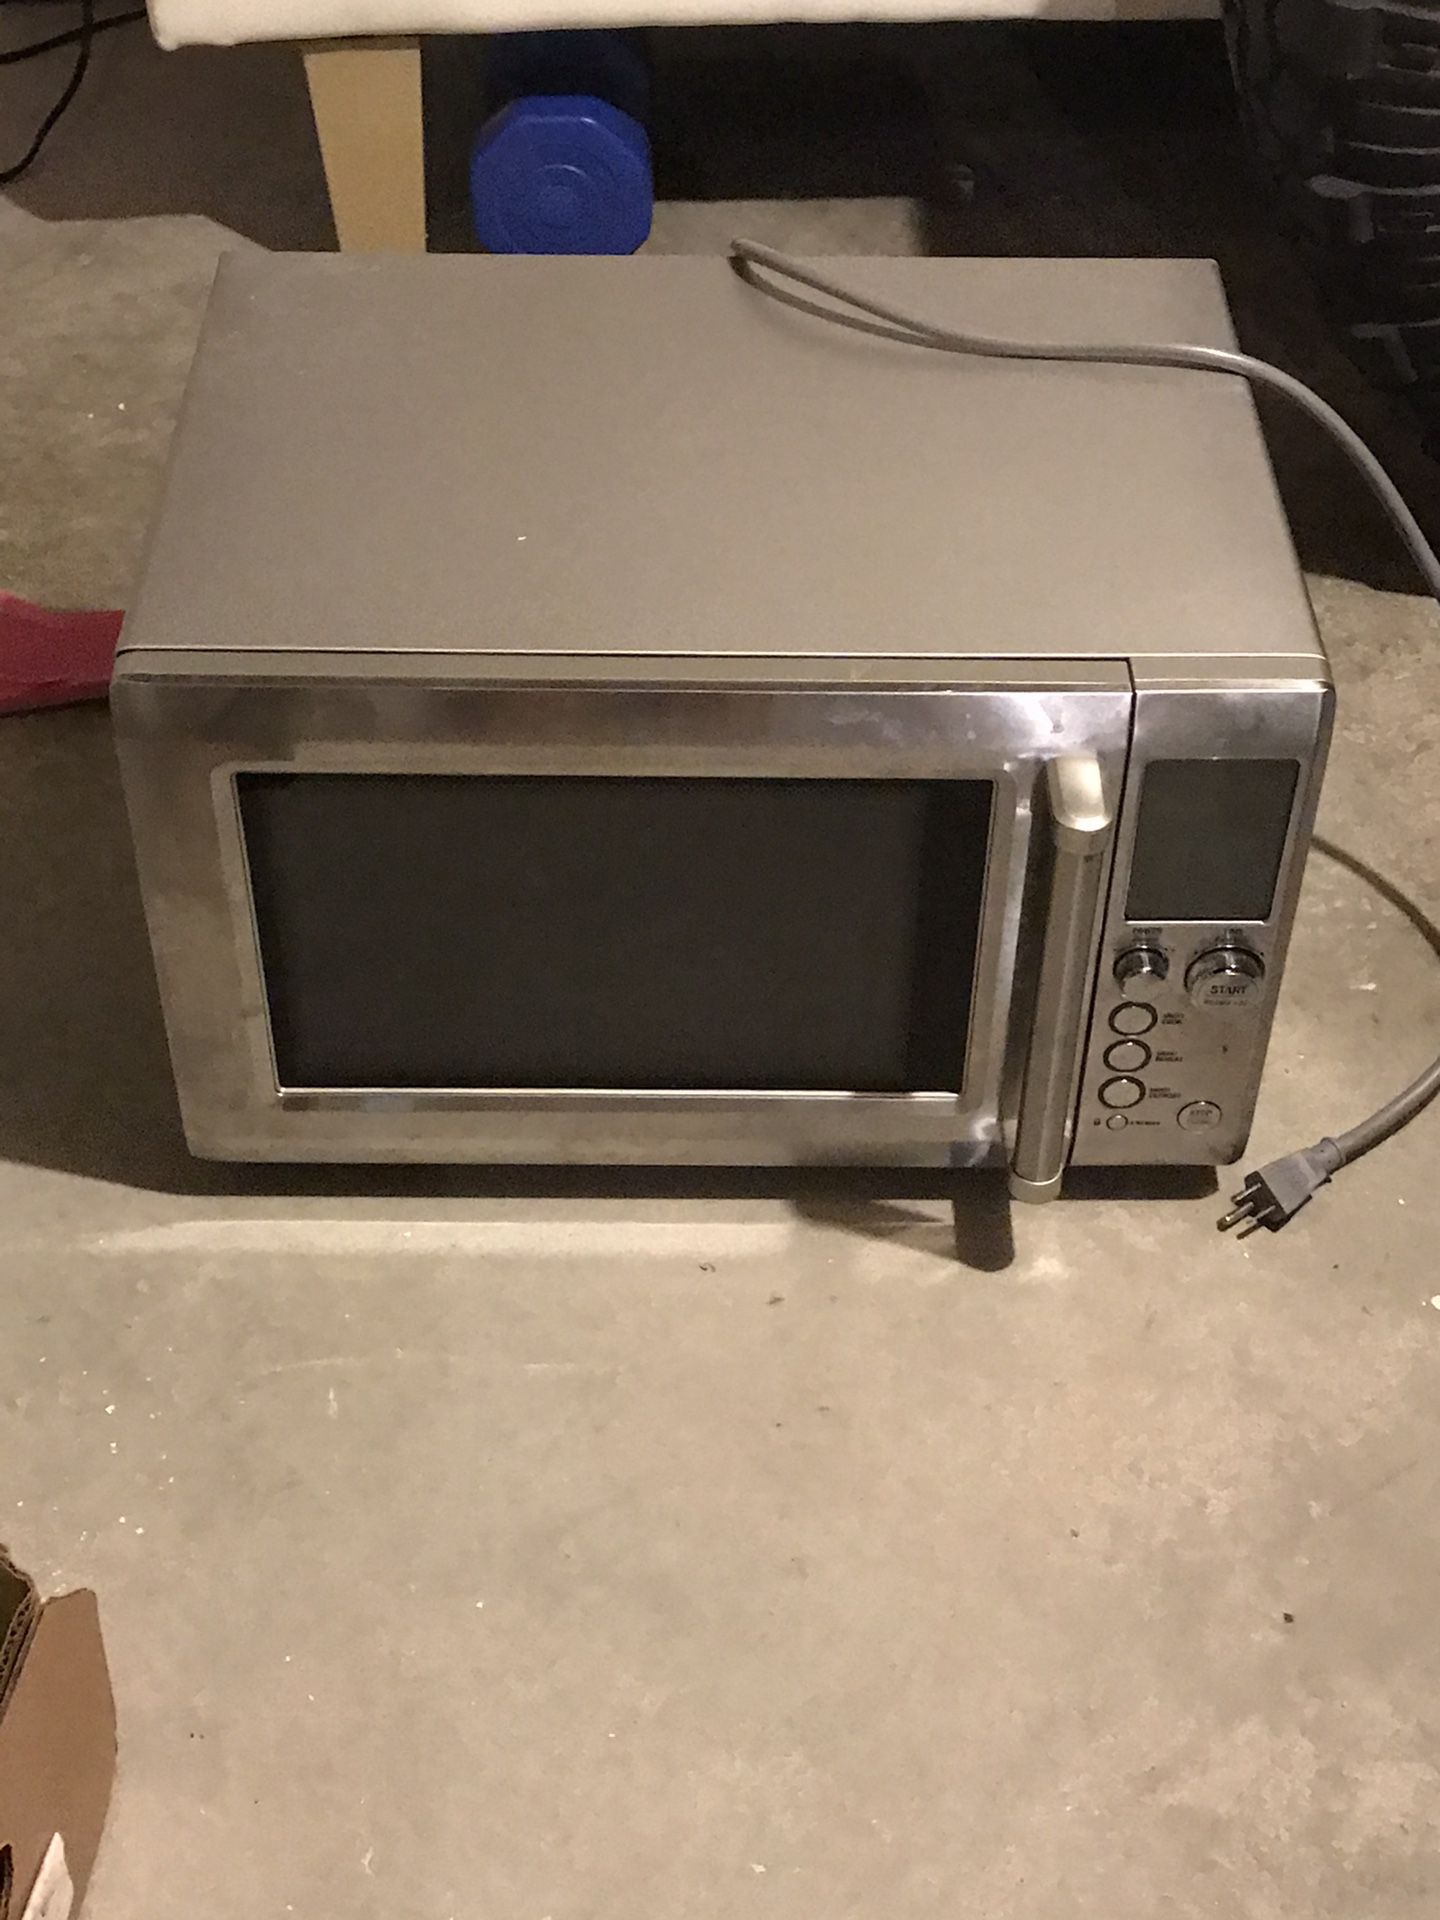 digital microwave